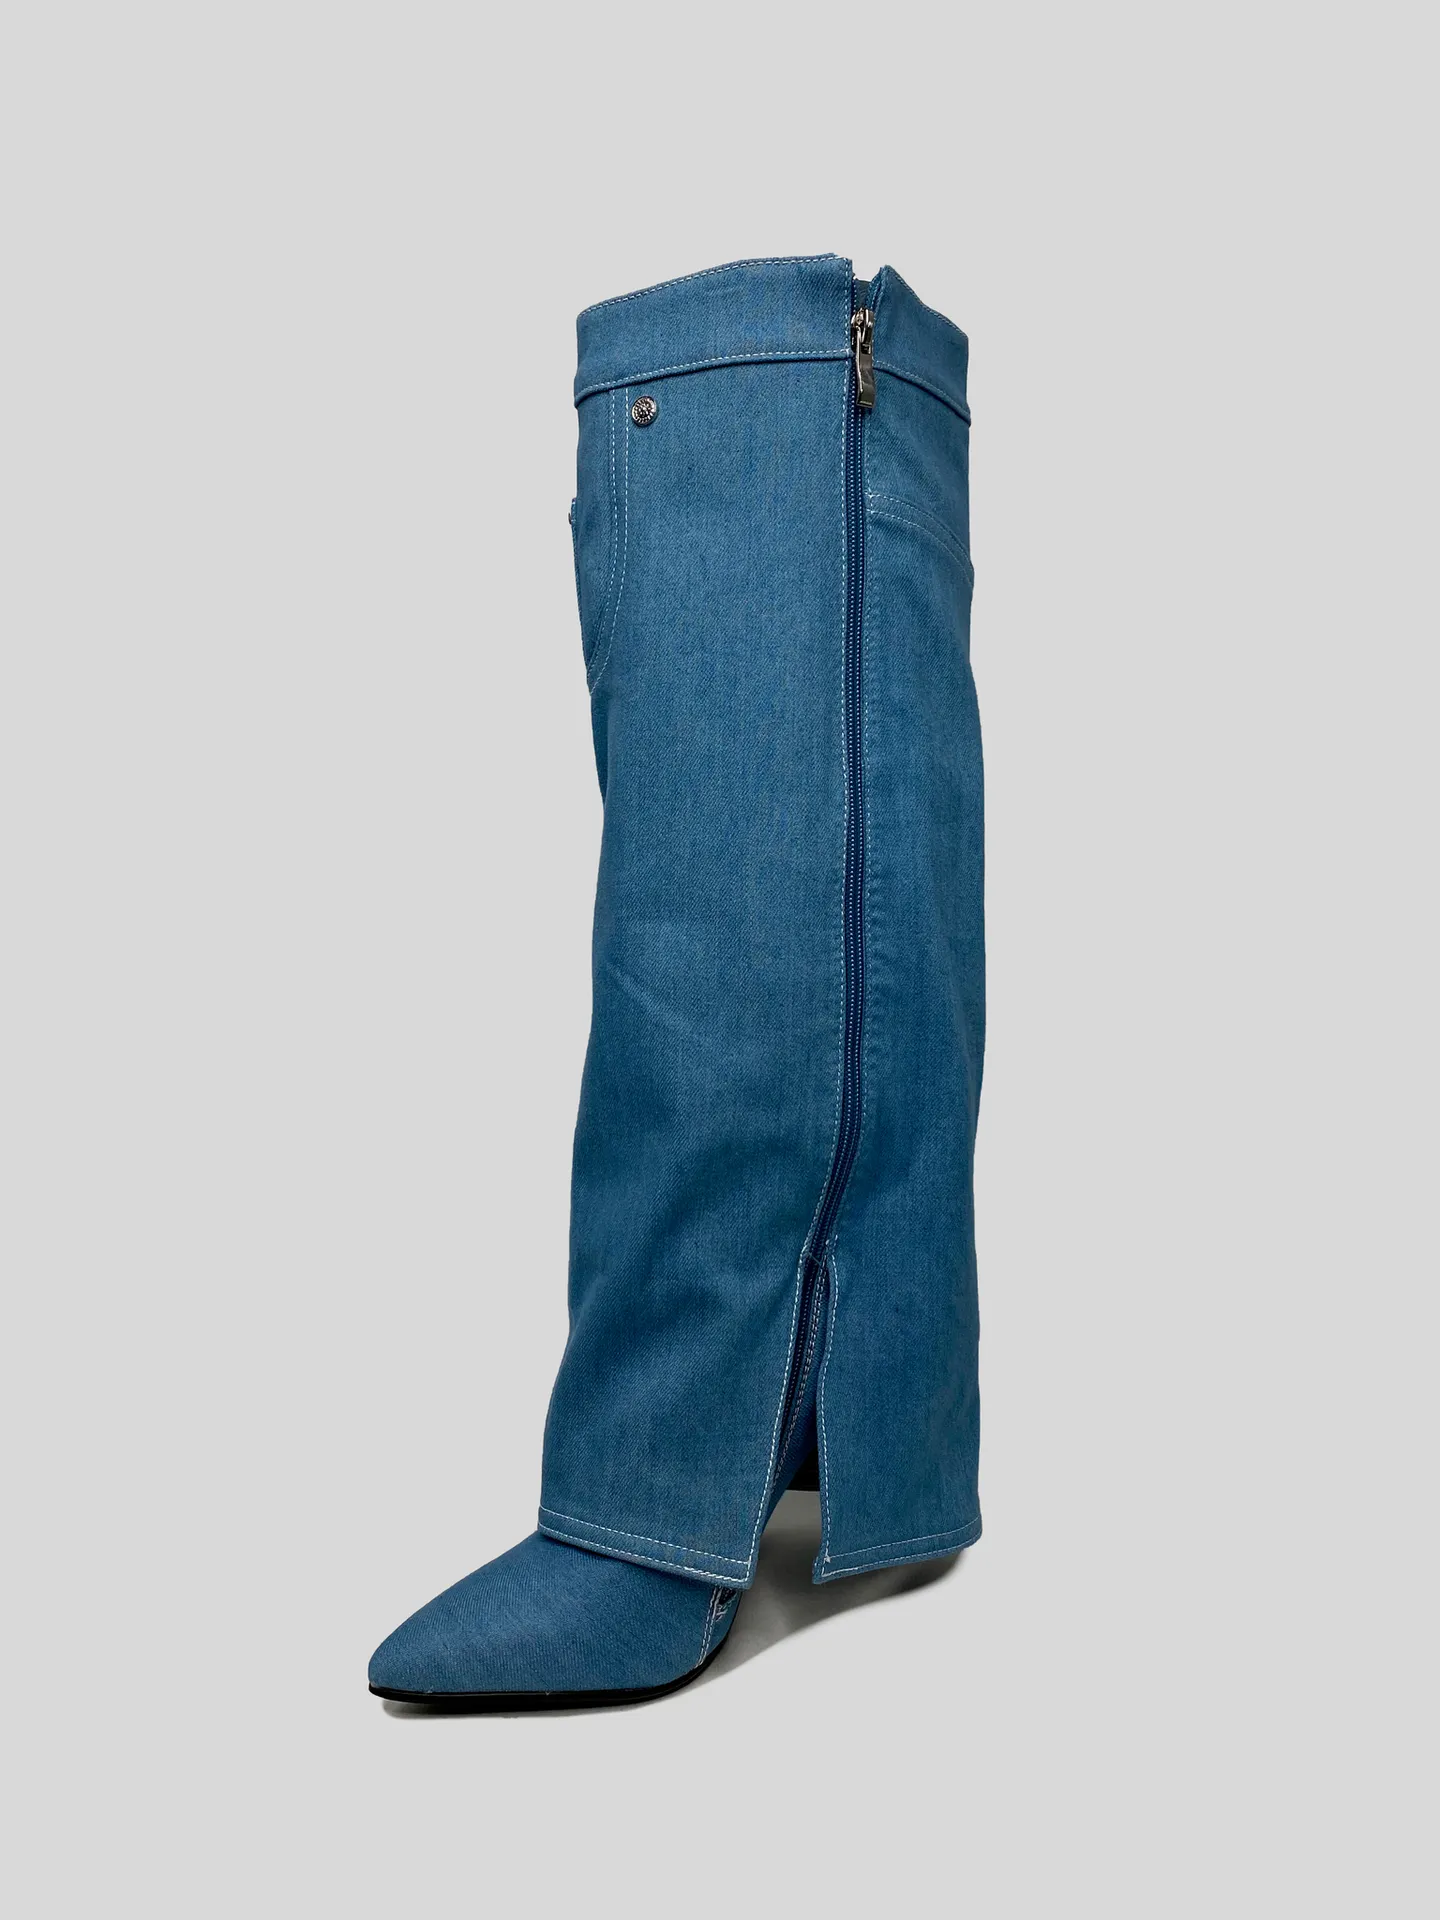 Сапоги Dino Albat E1026-7 джинсовые на шпильке купить